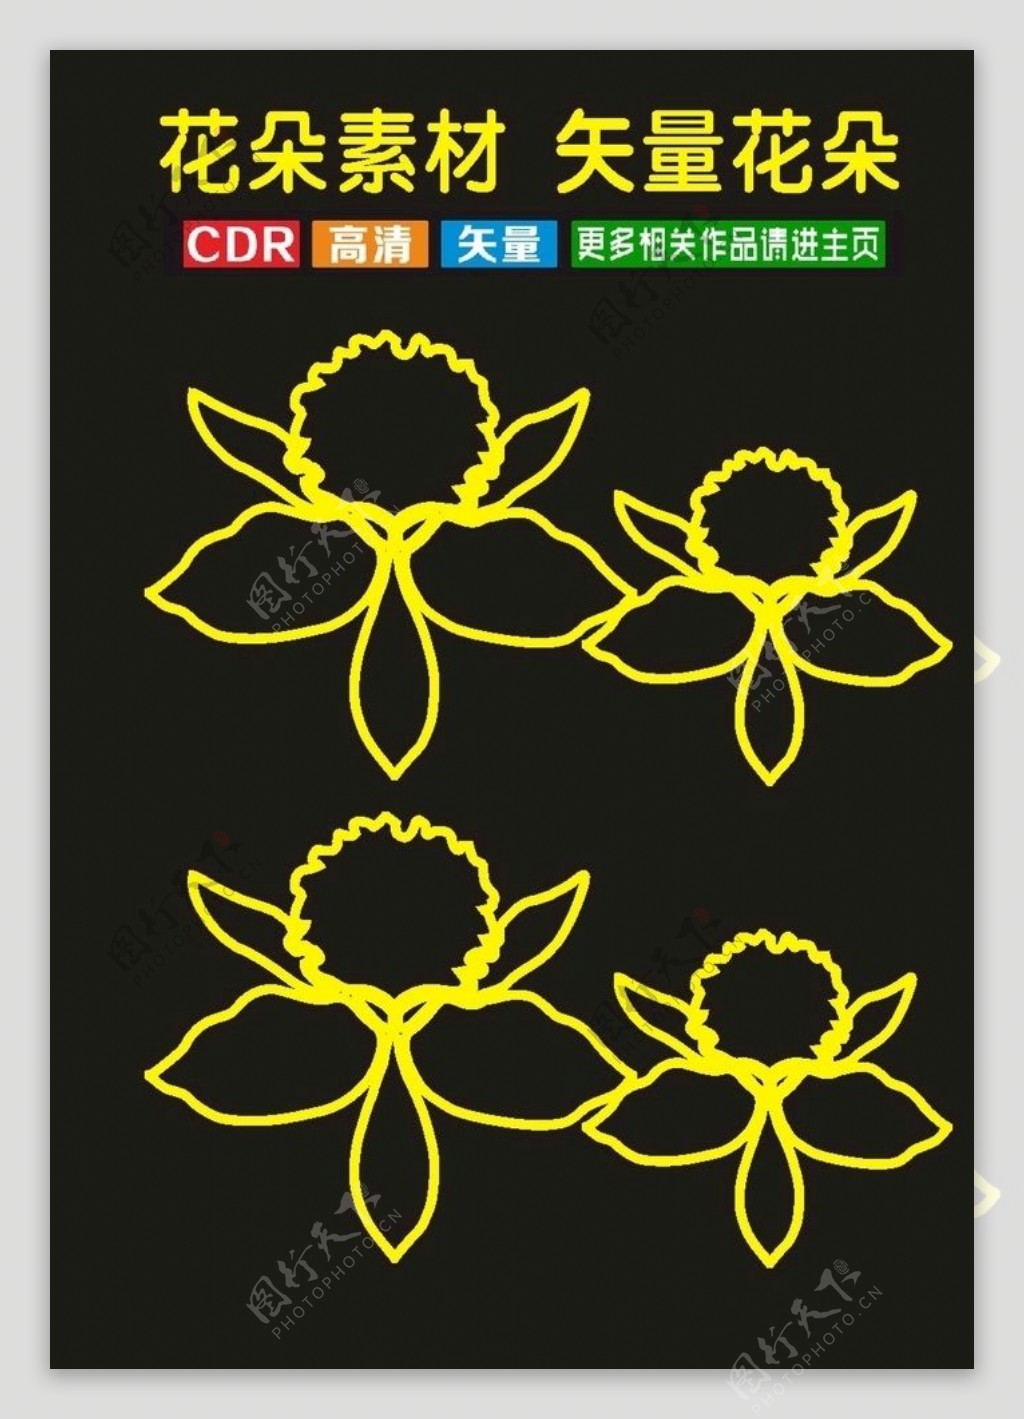 原创中国传统插花花卉cdr